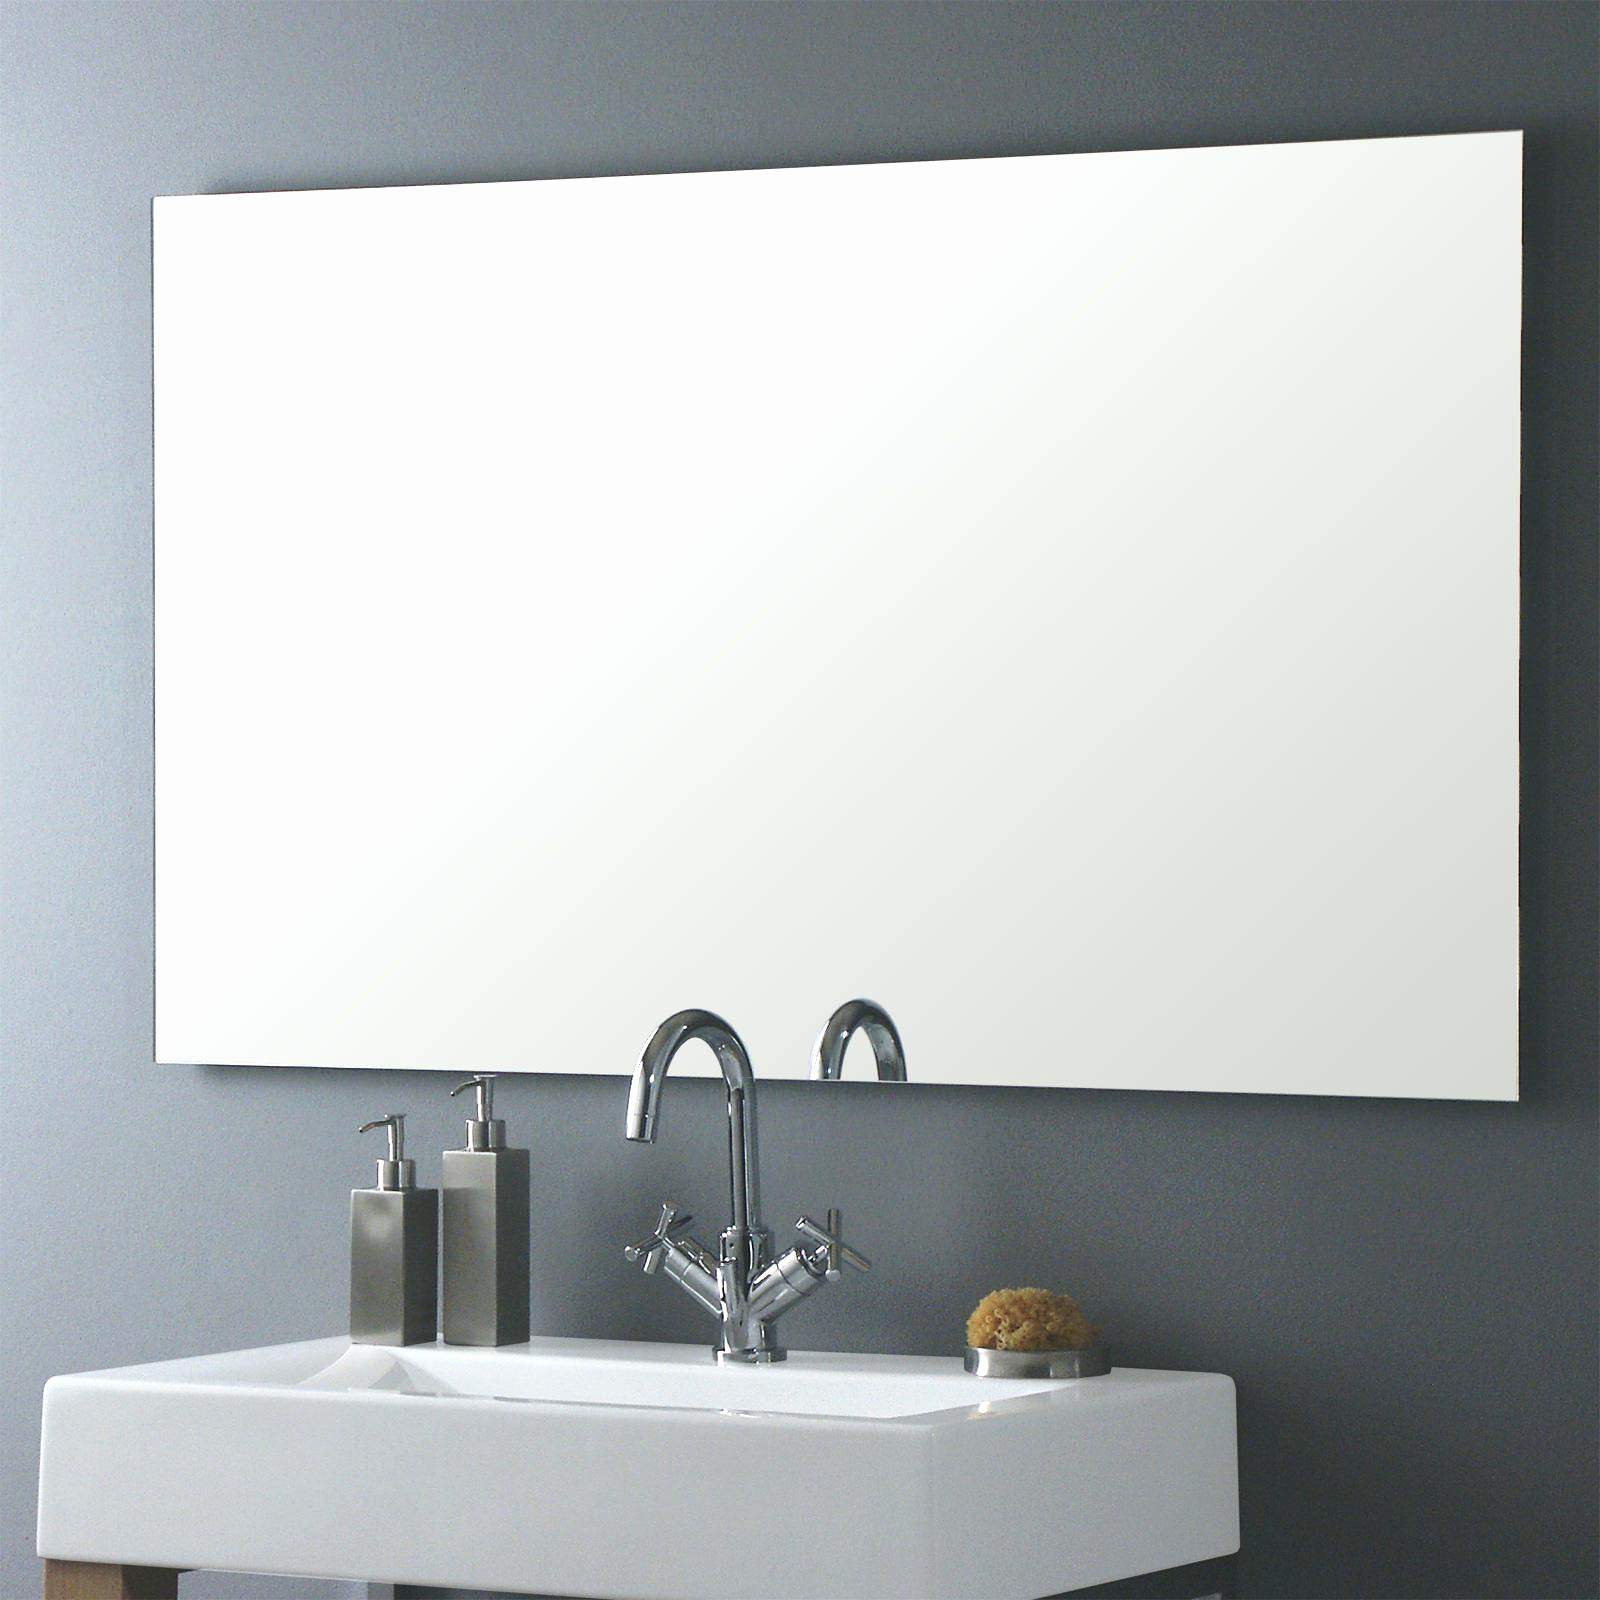 lampe fur badezimmerspiegel schon badspiegel mit beleuchtung gnstig amazing spiegel mit steckdose of lampe fur badezimmerspiegel